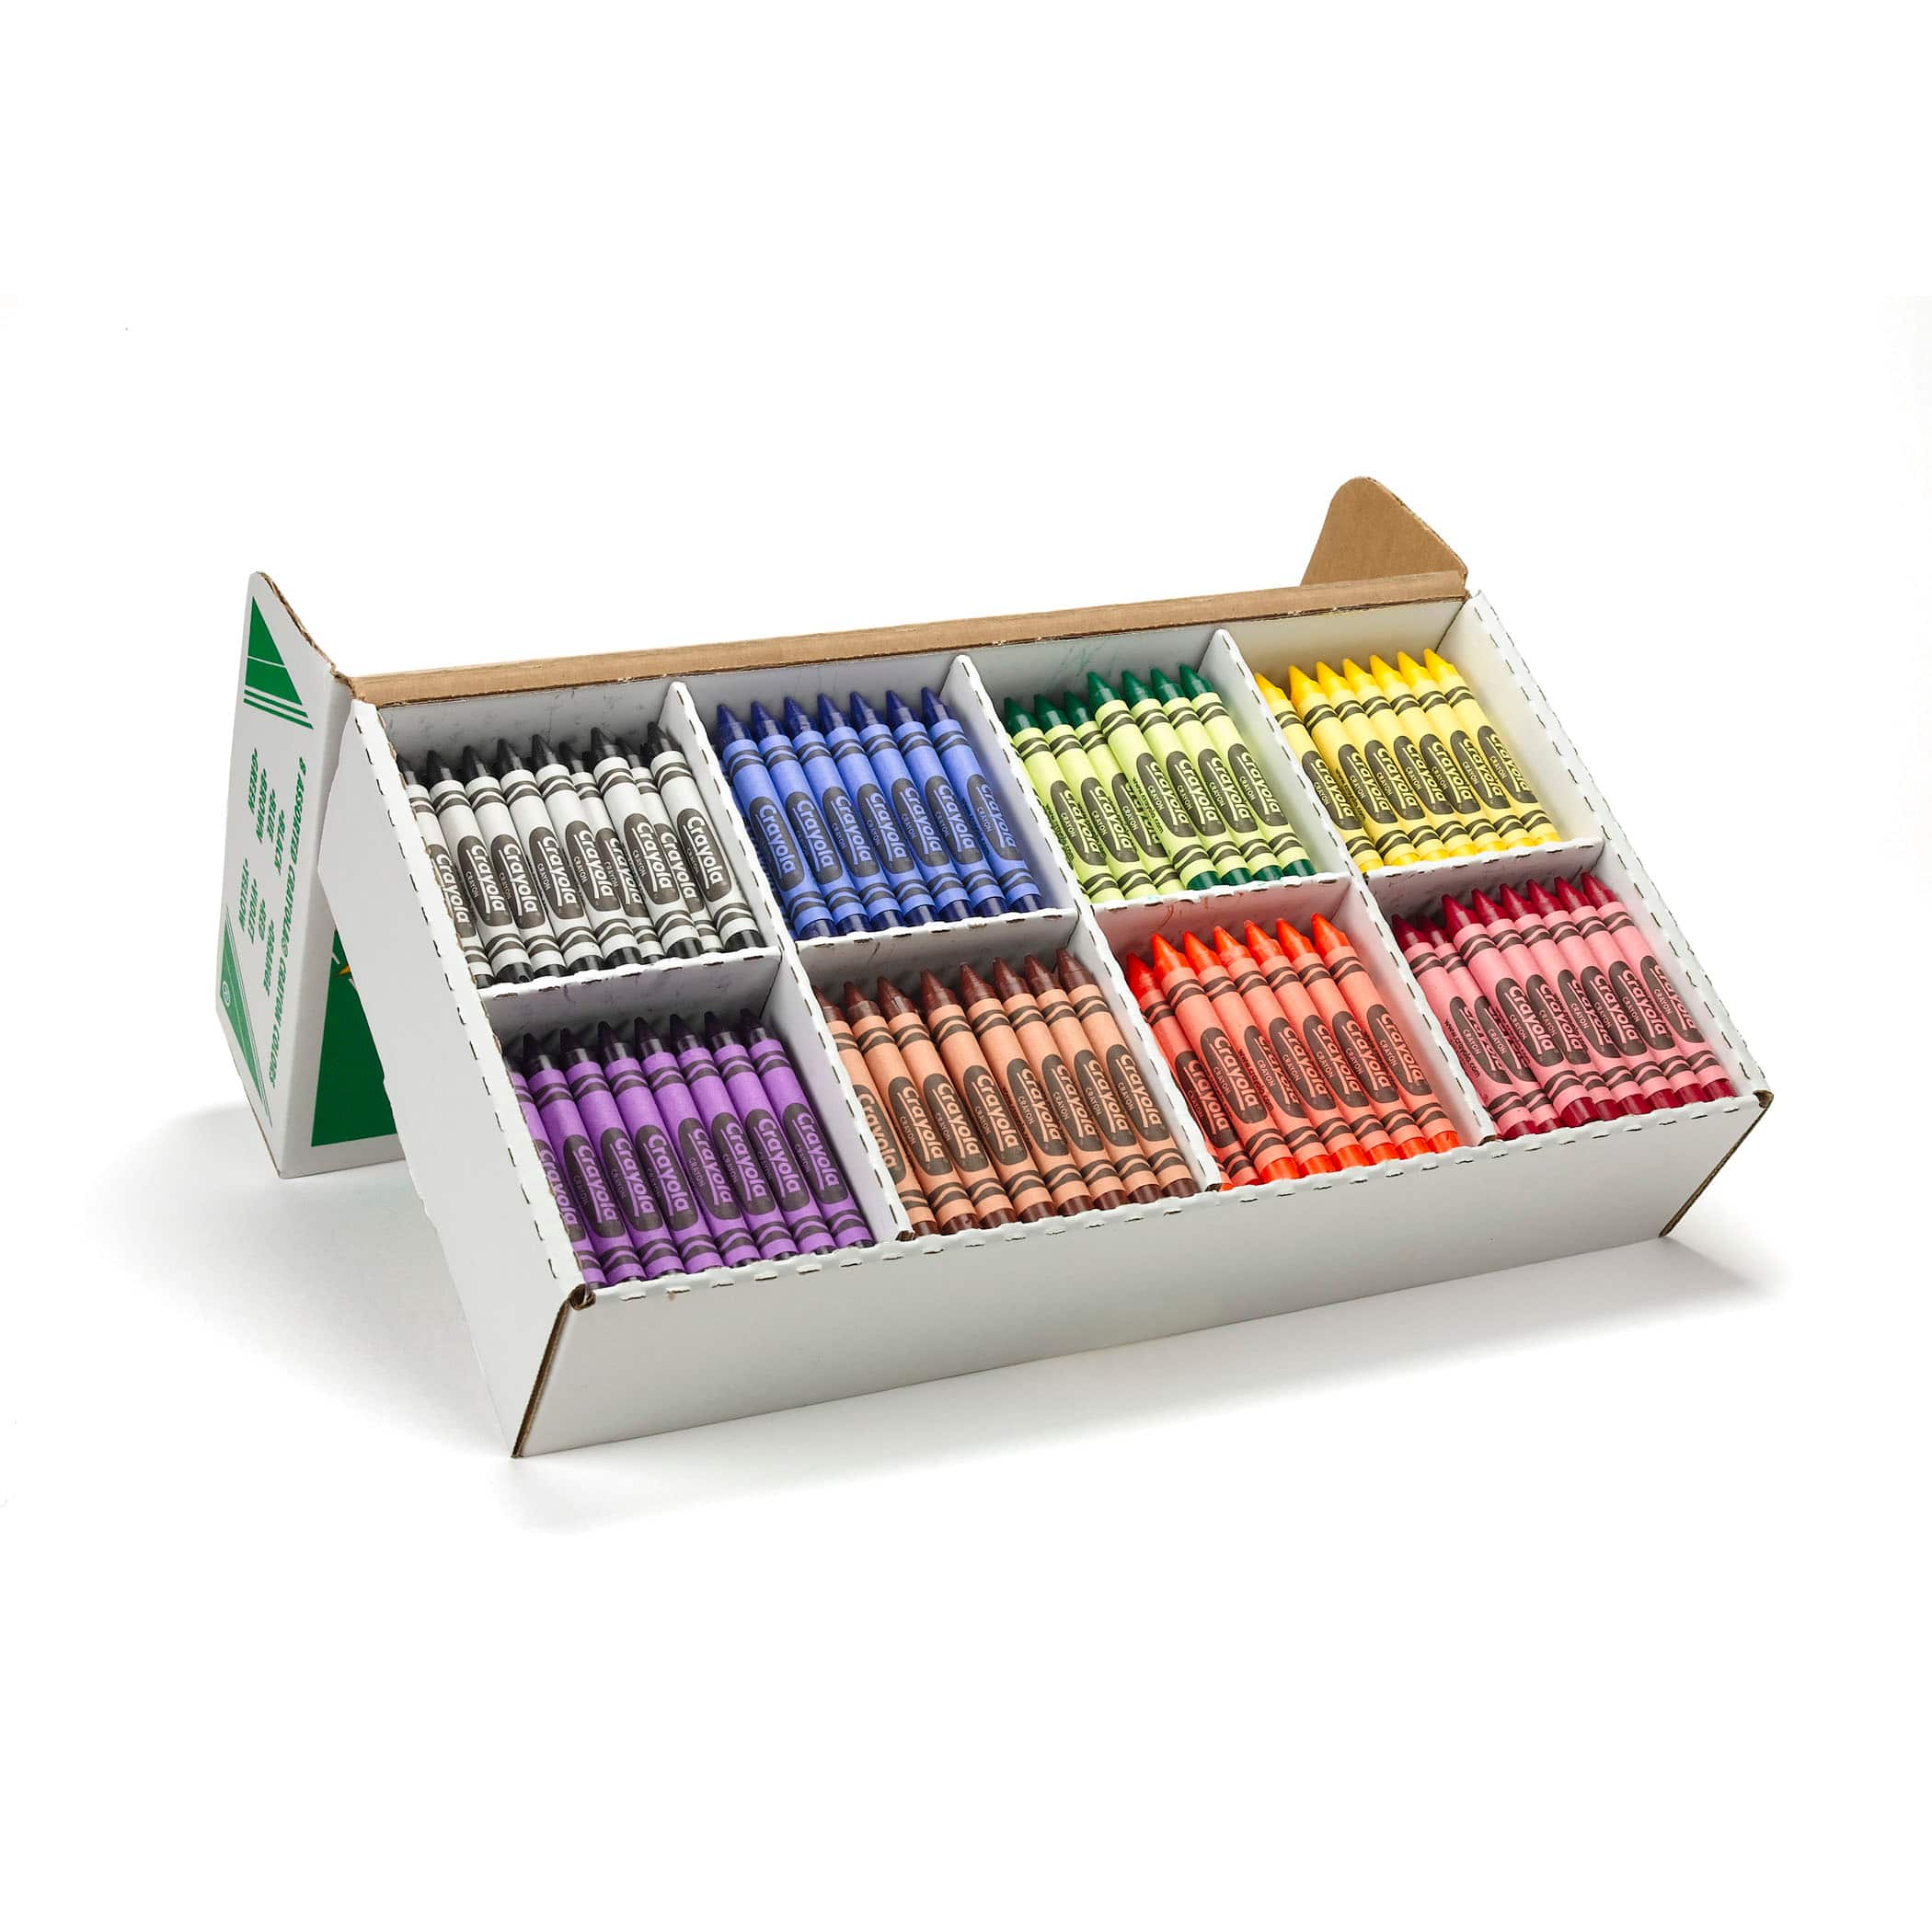 6 Packs: 400 ct. (2,400 total) Crayola&#xAE; Large Size Crayon Classpack&#xAE;